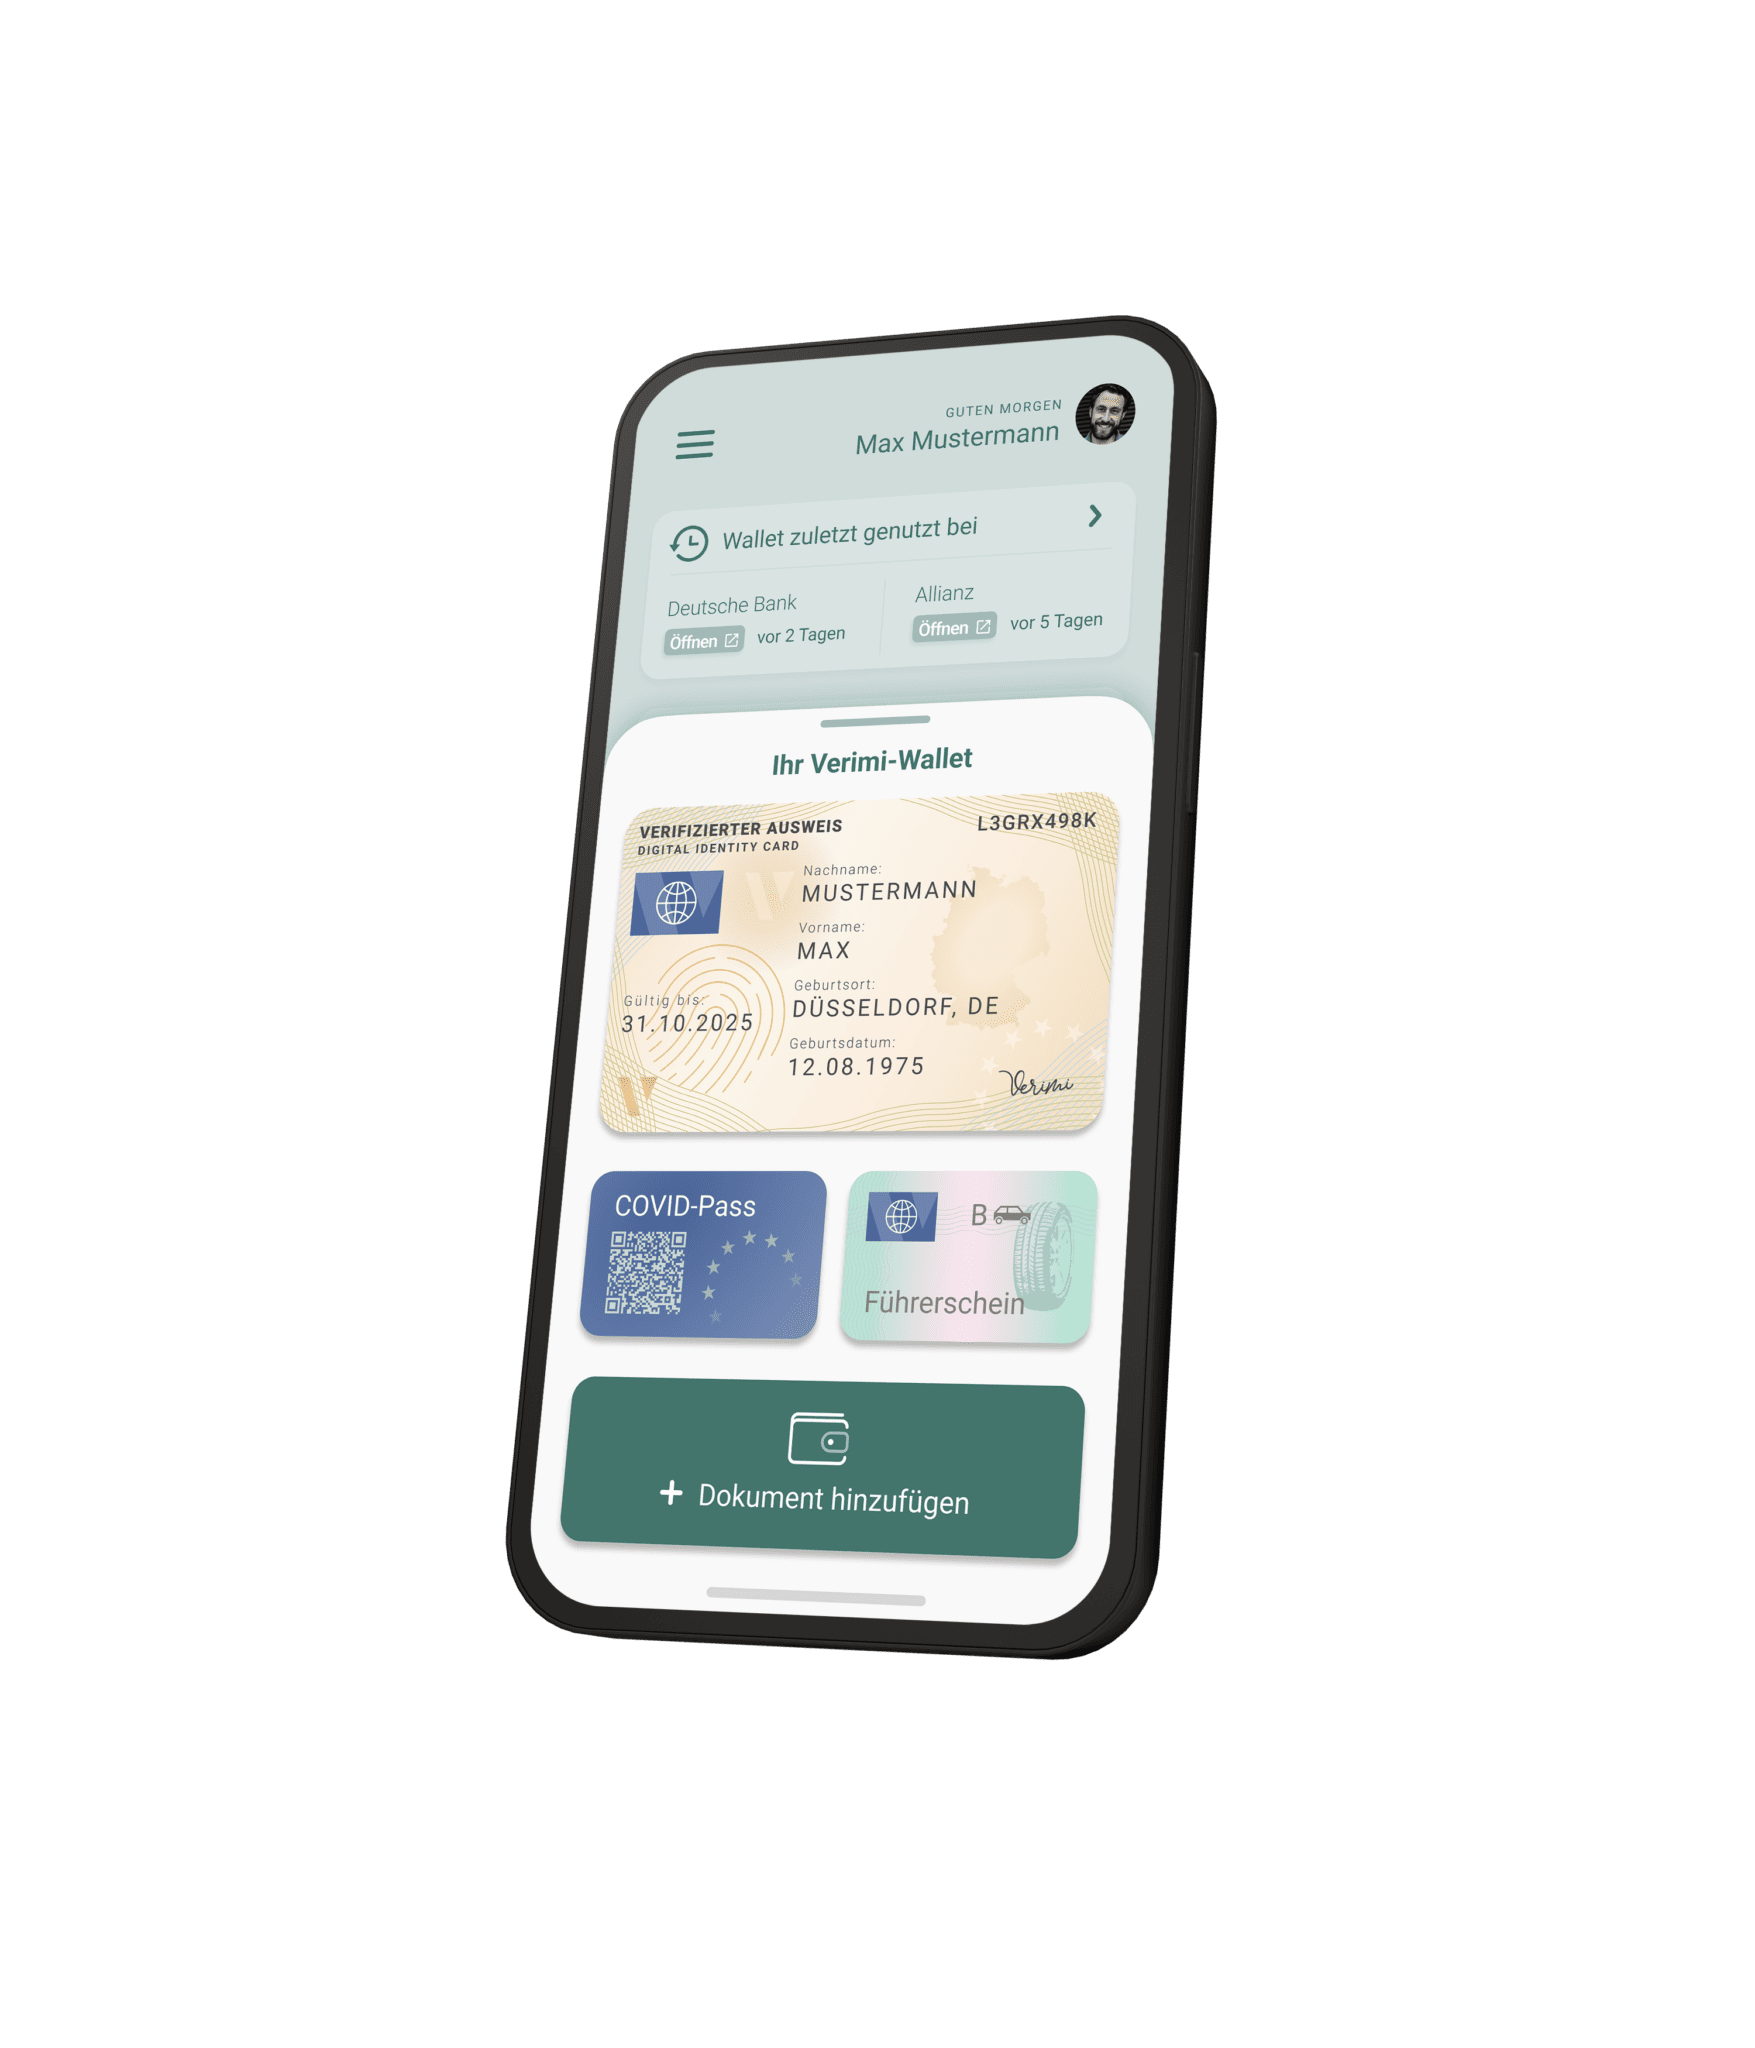 Verimi ID-Wallet mit einem Profilbild oben rechts, darunter die letzten Aktivitäten "Deutsche Bank vor 2 Tagen" und "Allianz vor 5 Tagen". Darunter drei Karten -Digitaler Ausweis, digitaler Führerschein und digitaler Covid Pass - und ein Button mit dem Text "Dokument hinzufügen".